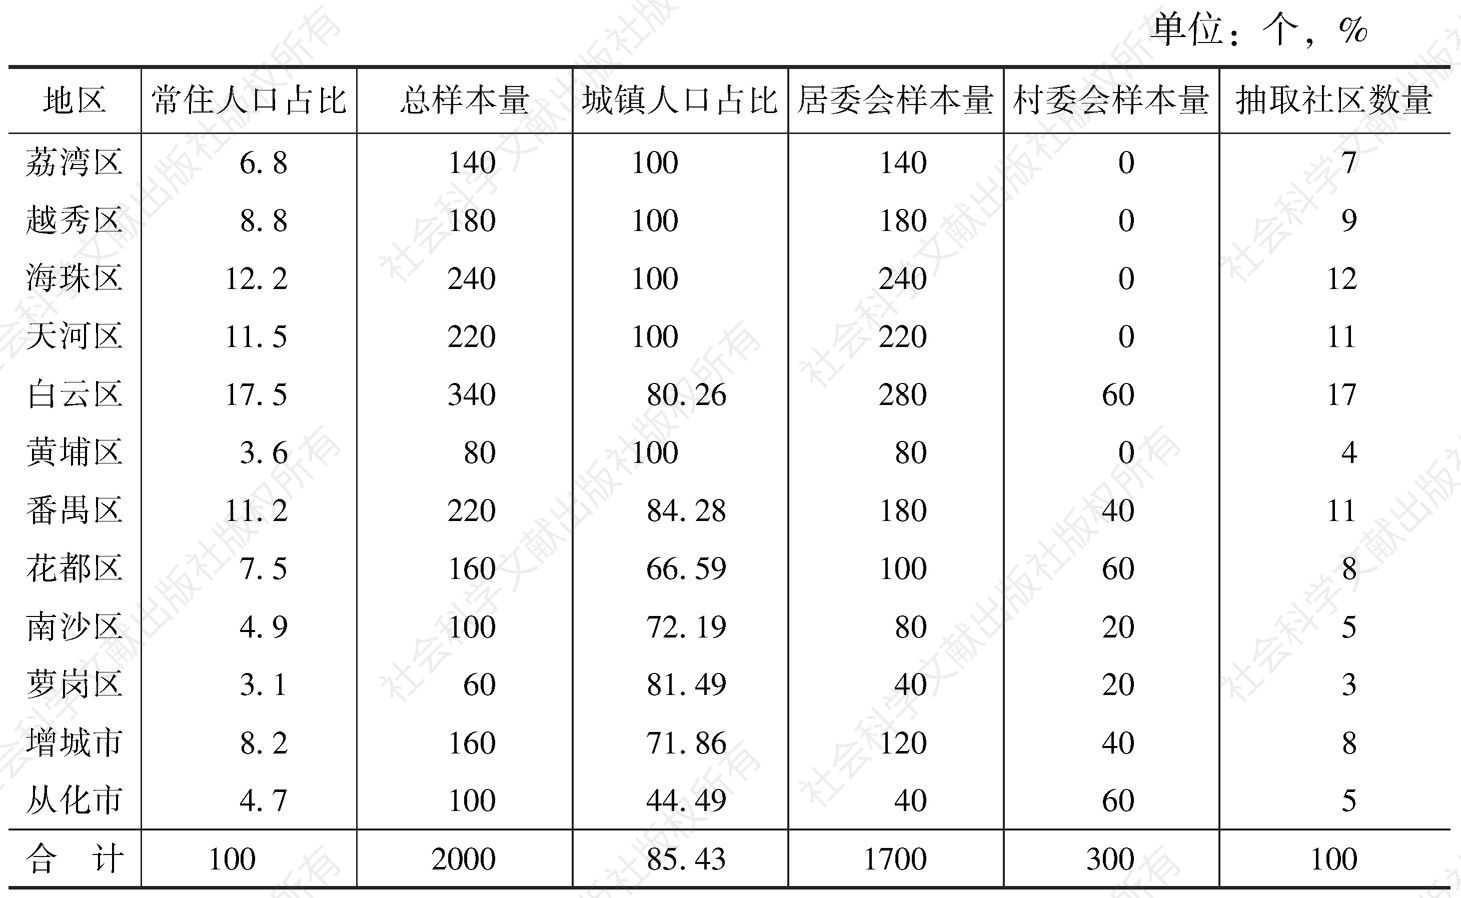 表3 广州市公民科学素质调查样本量分配情况